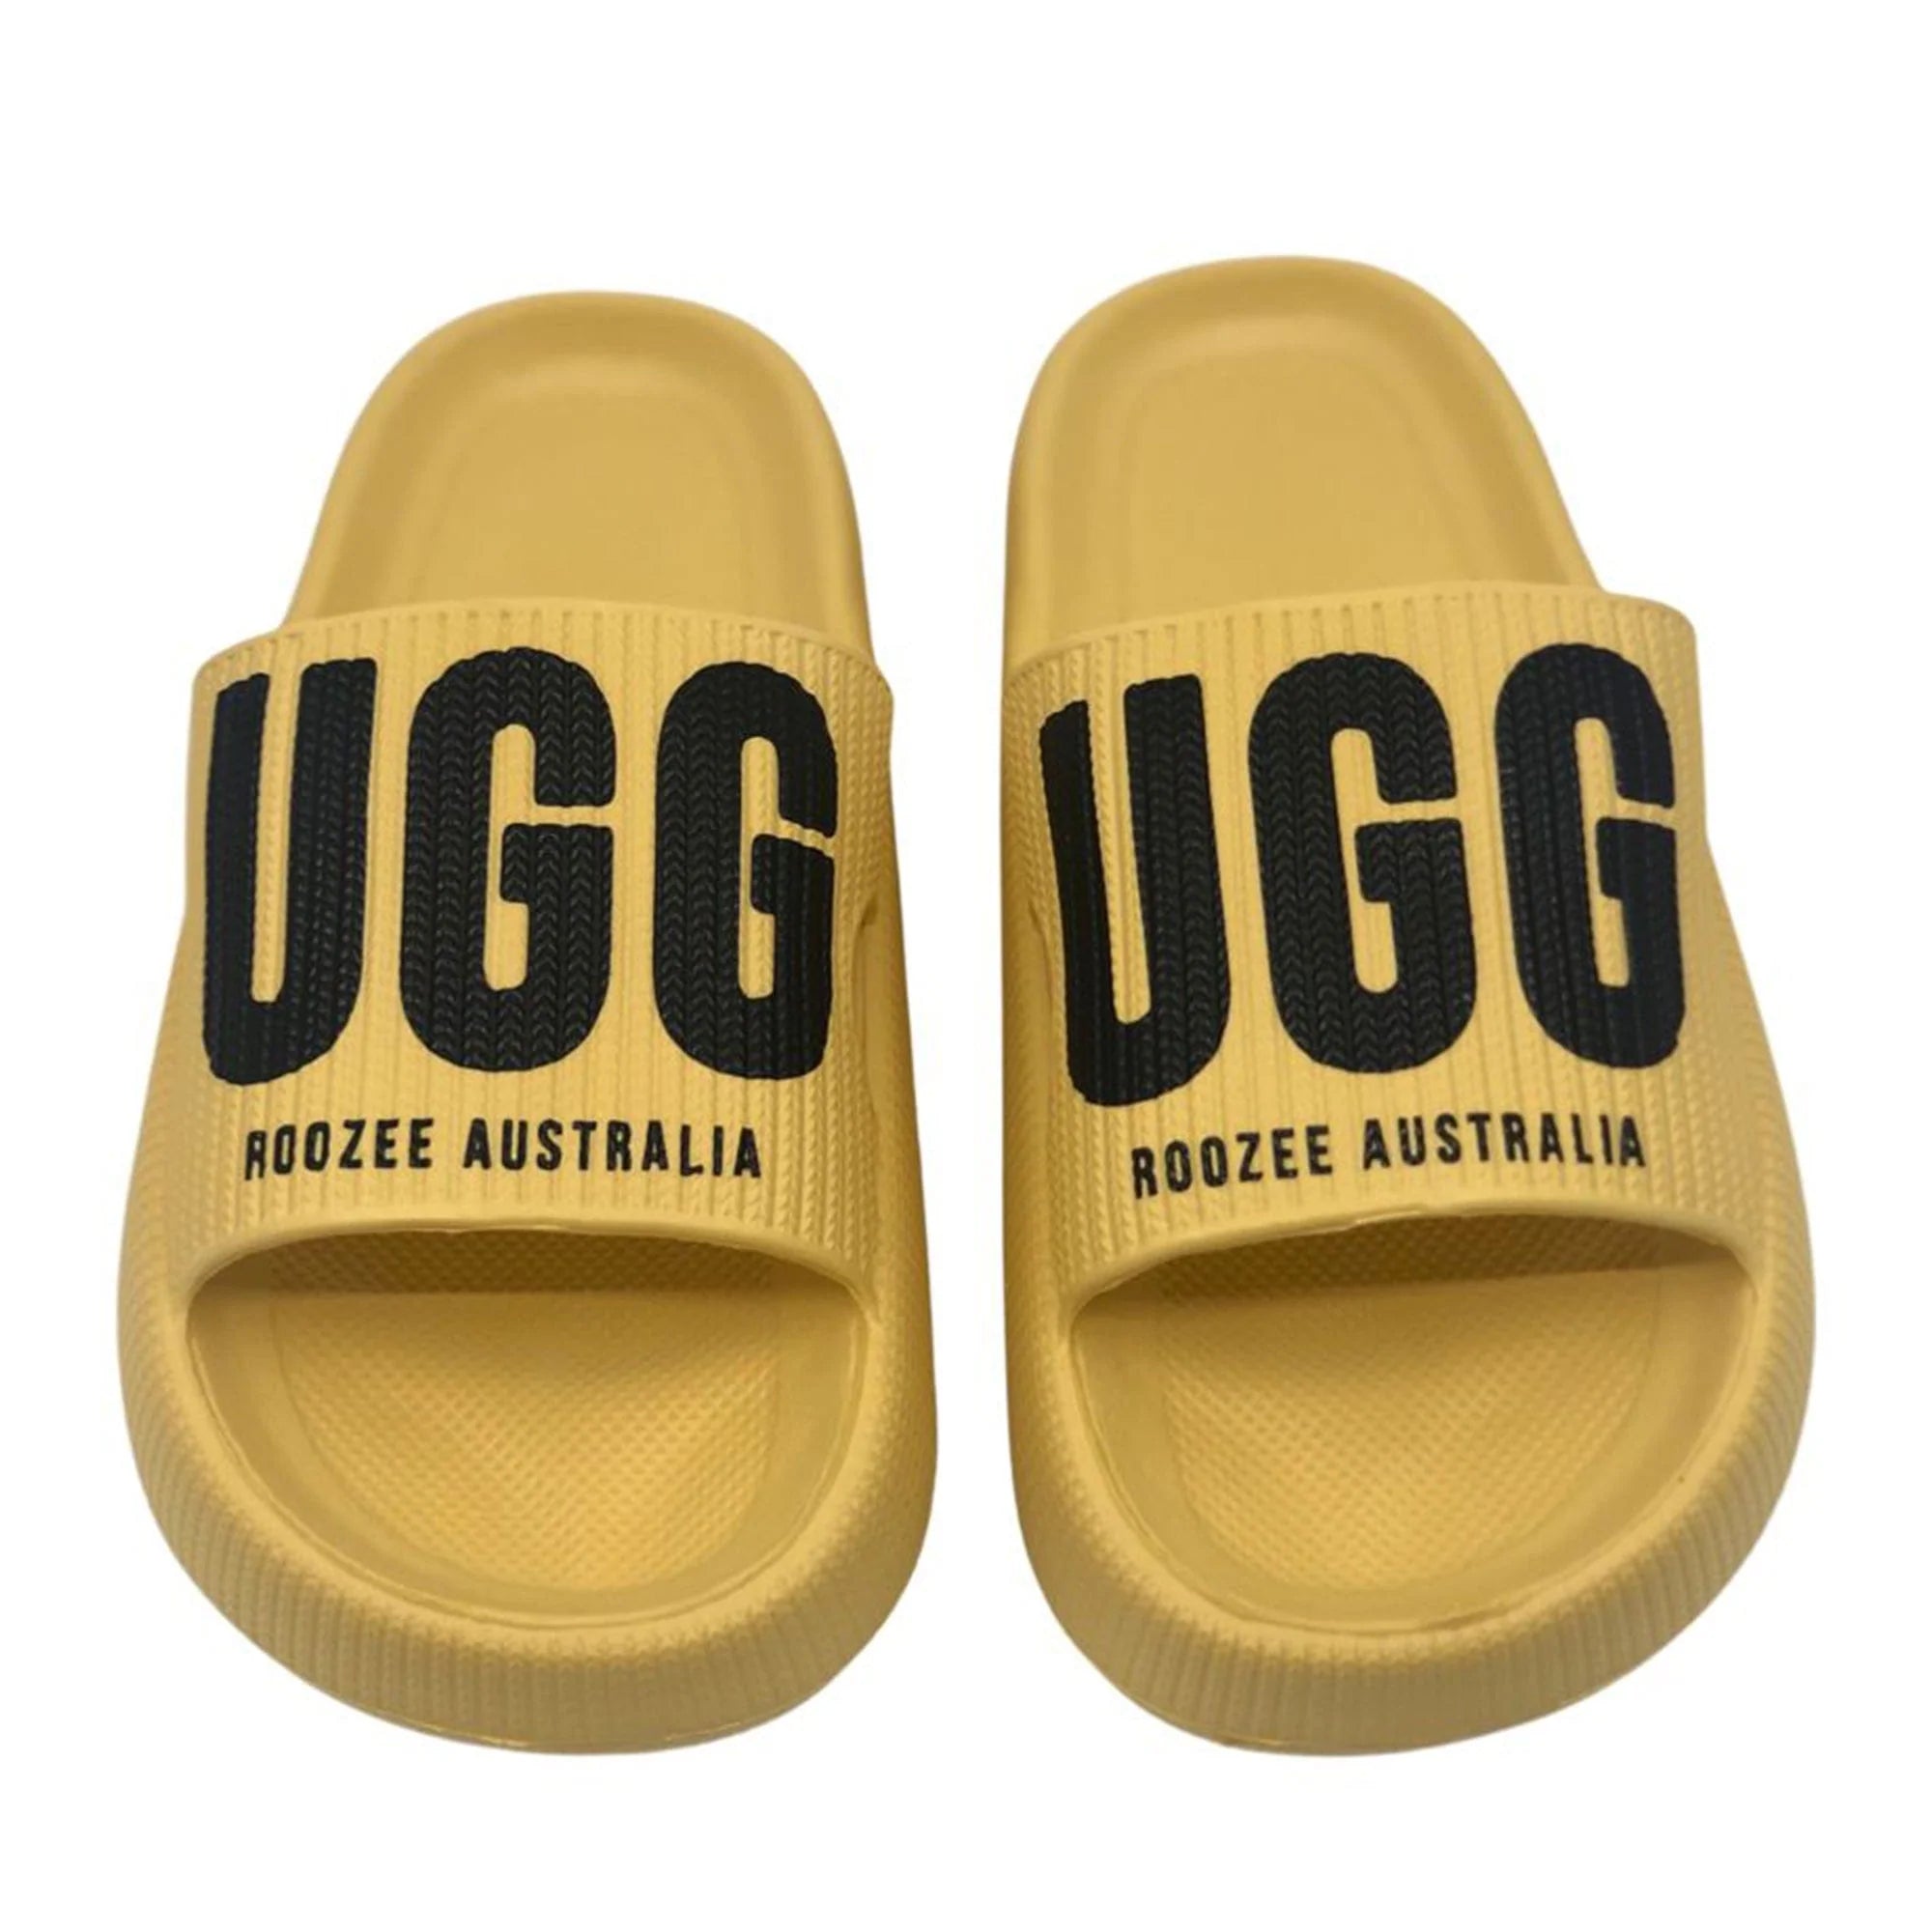  - Premium Summer Slides - Original UGG Australia Classic